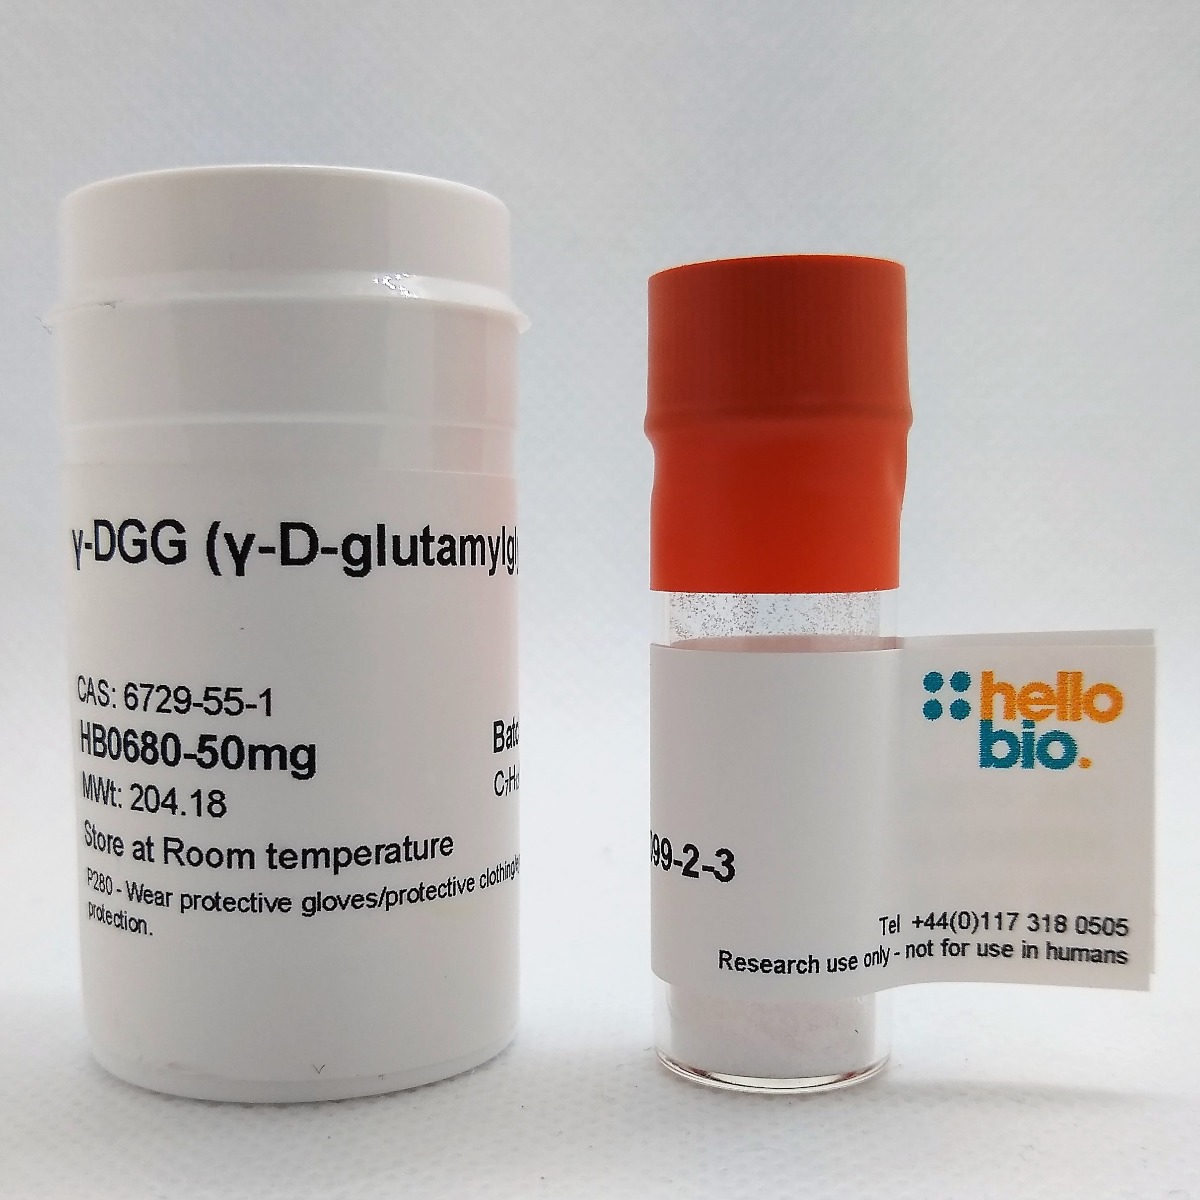 γ-DGG (γ-D-glutamylglycine) product vial image | Hello Bio